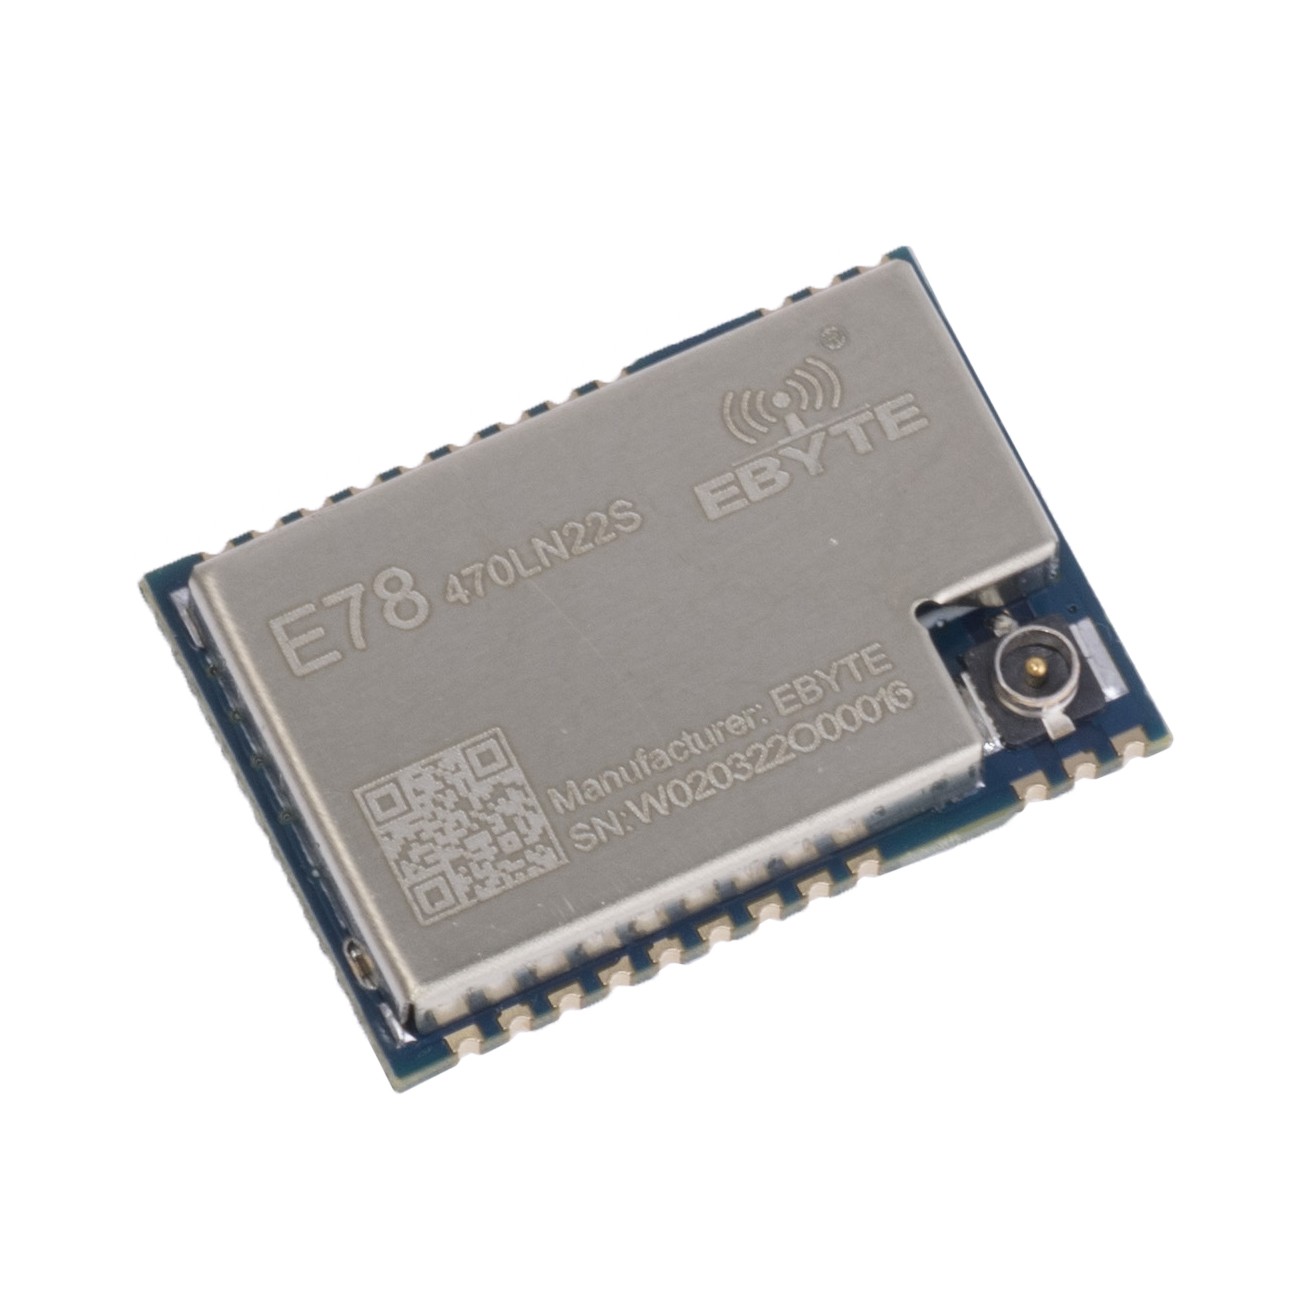 E78-470LN22S (Ebyte) SoC module on chip ASR6501 410-493MHz SMD